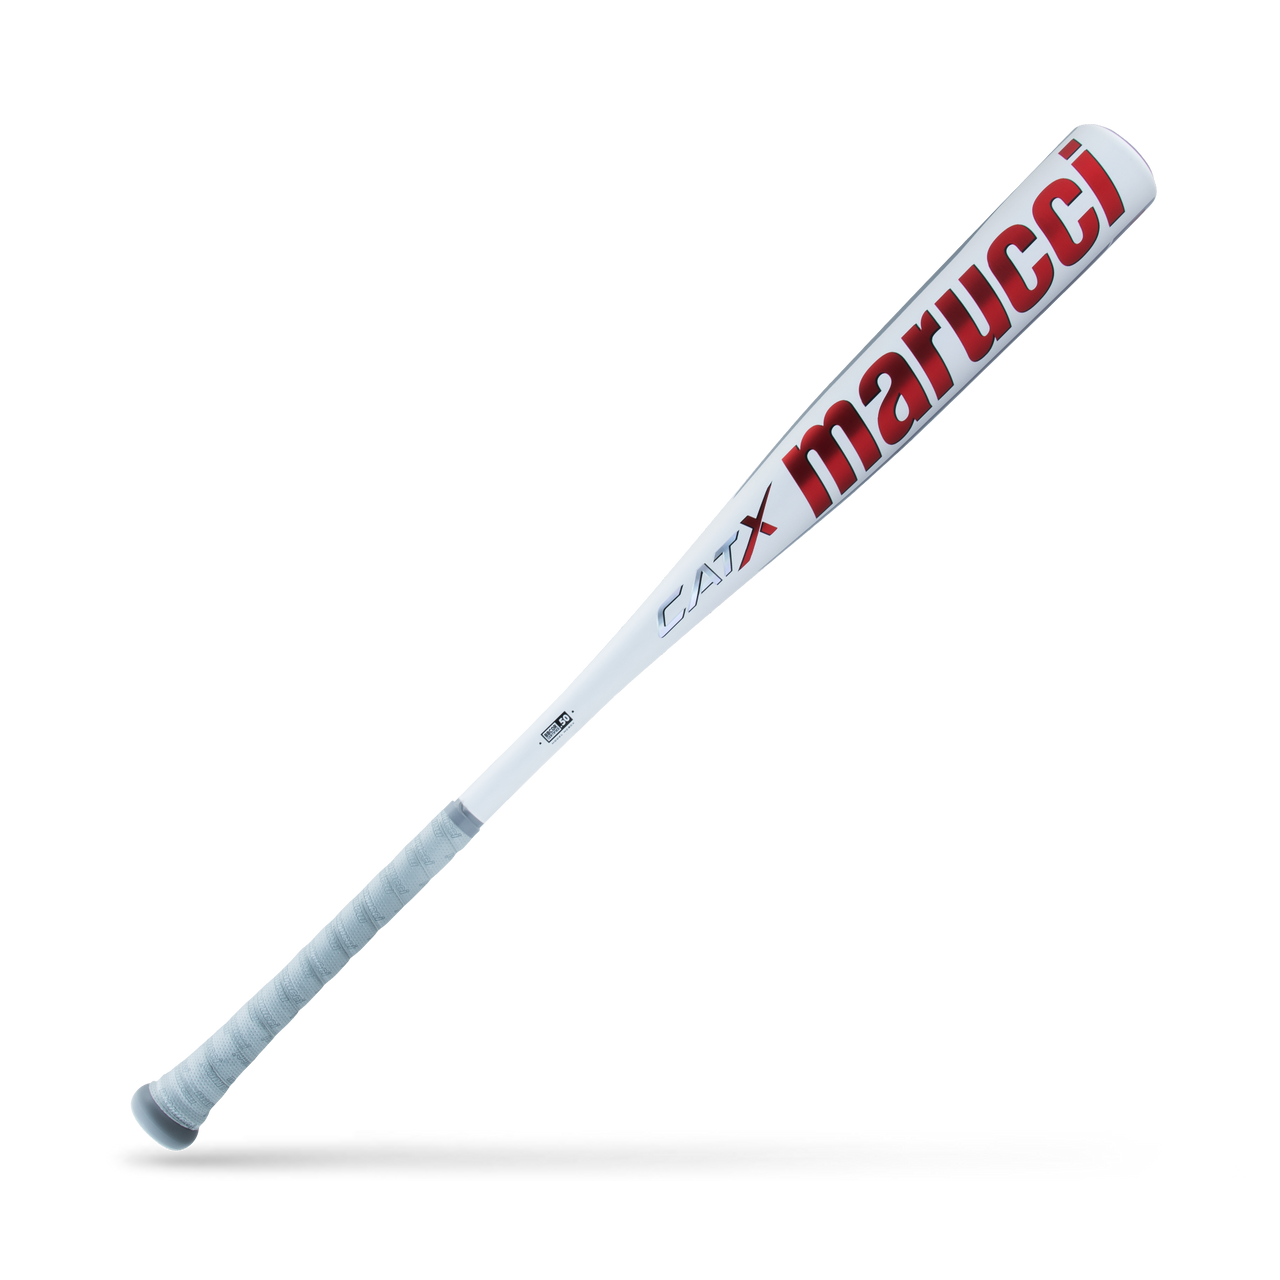 Marucci CATX (-3) BBCOR Baseball Bat: MCBCX